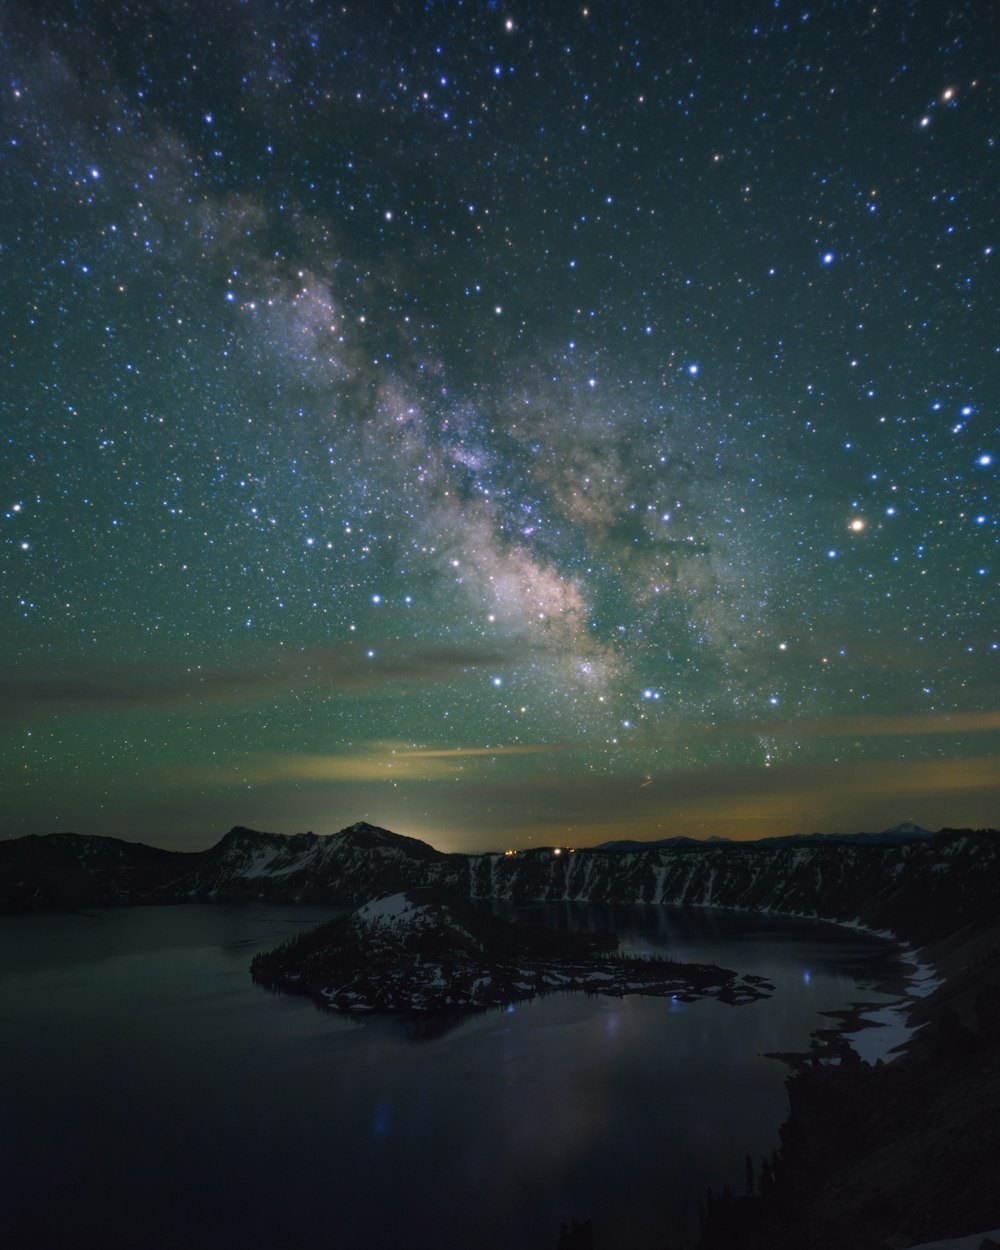 El cielo nocturno con estrellas sobre un lago